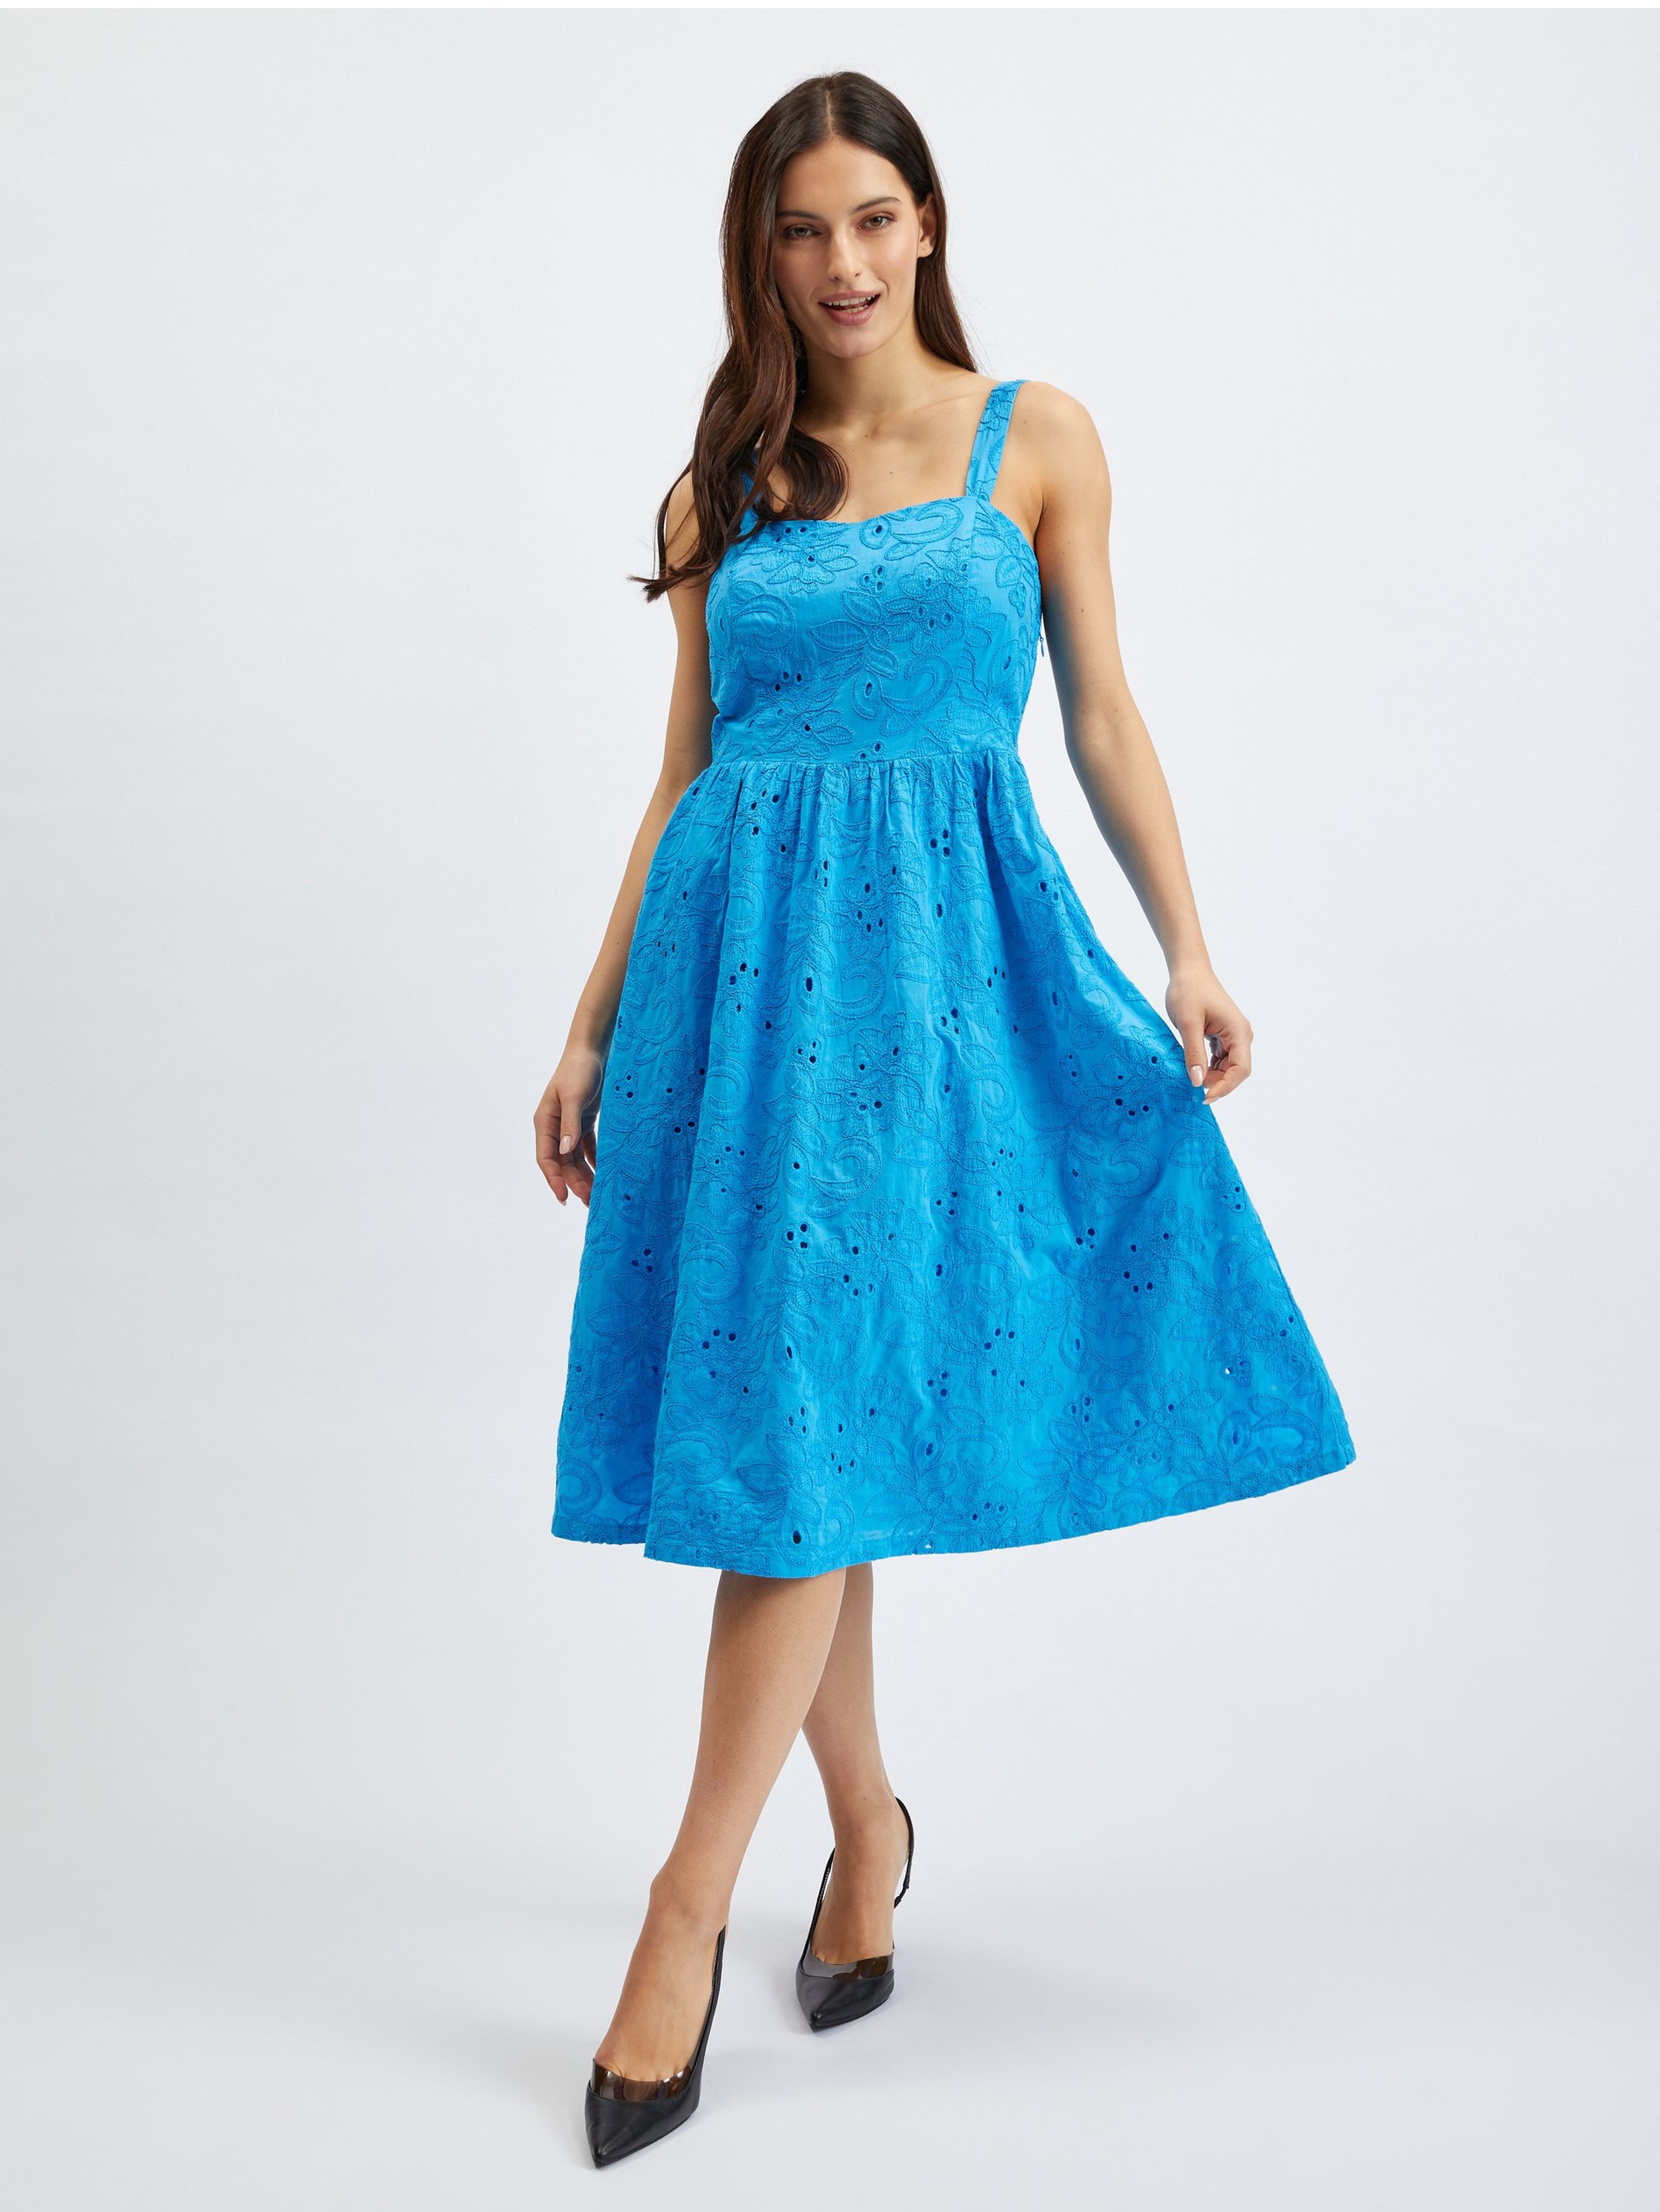 Modré dámske šaty ORSAY